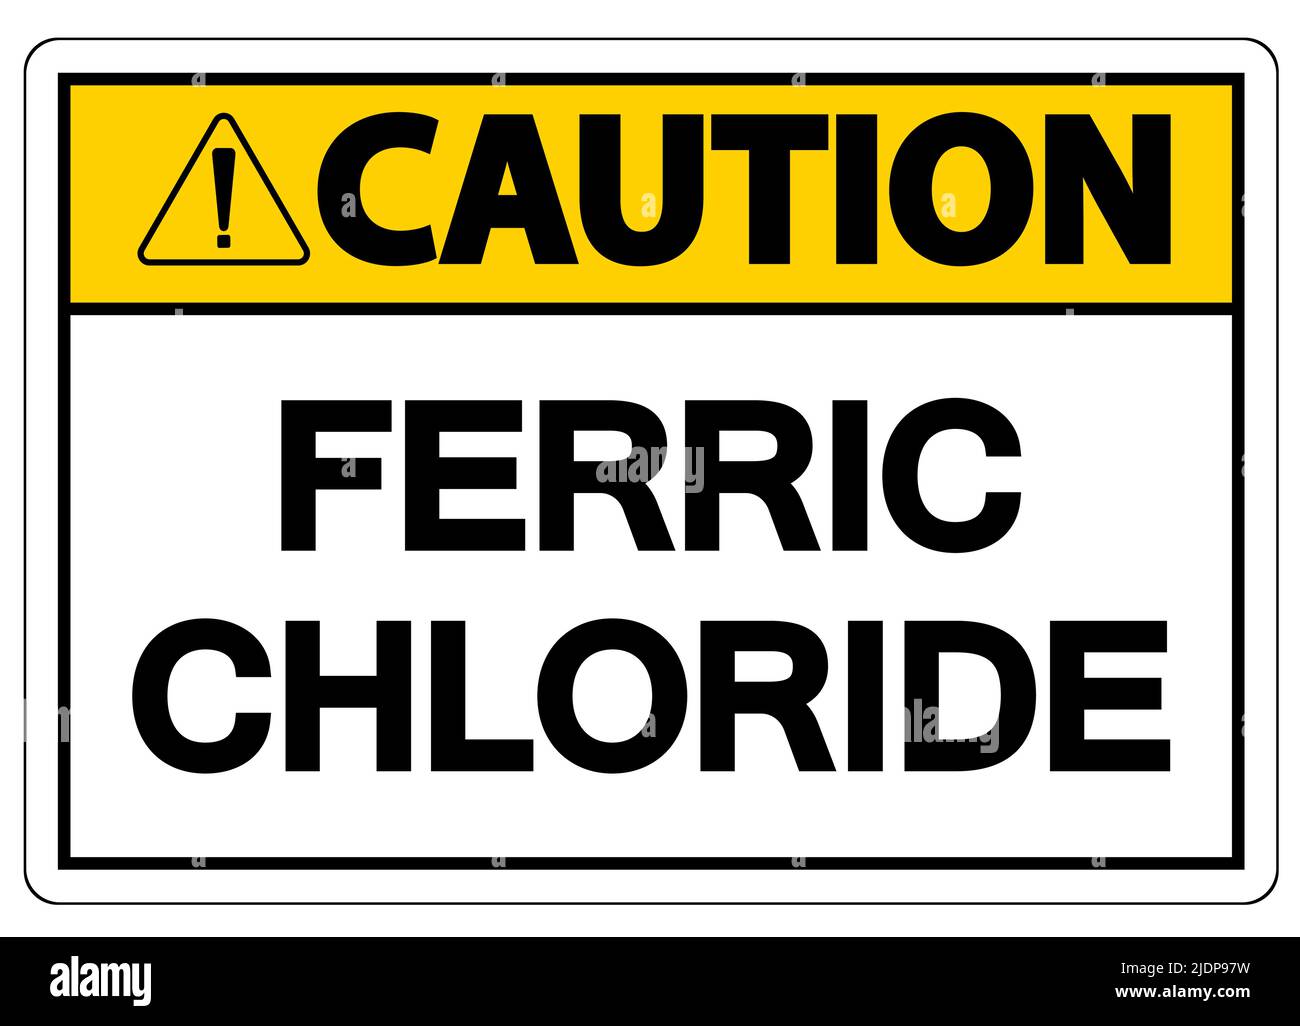 Panneau de mise en garde concernant les produits chimiques chlorure de fer sur fond blanc Illustration de Vecteur